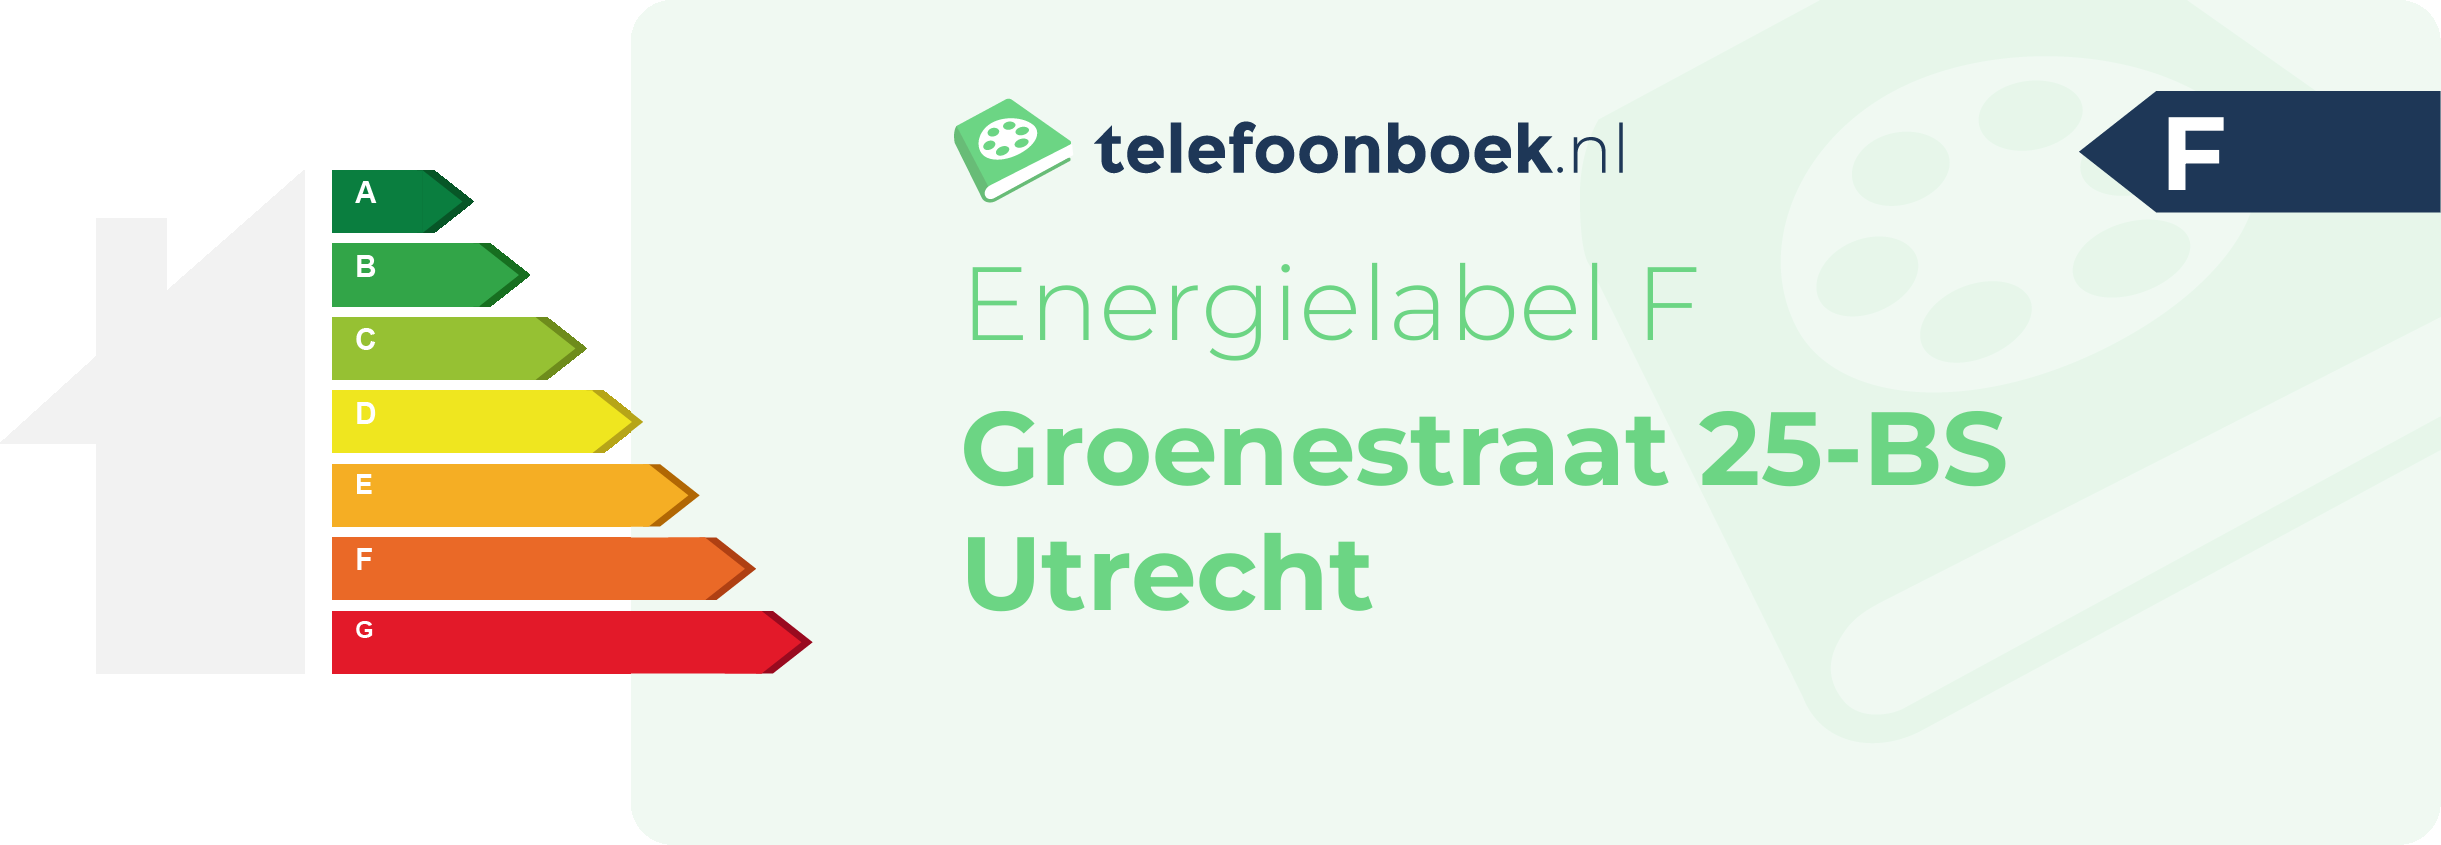 Energielabel Groenestraat 25-BS Utrecht